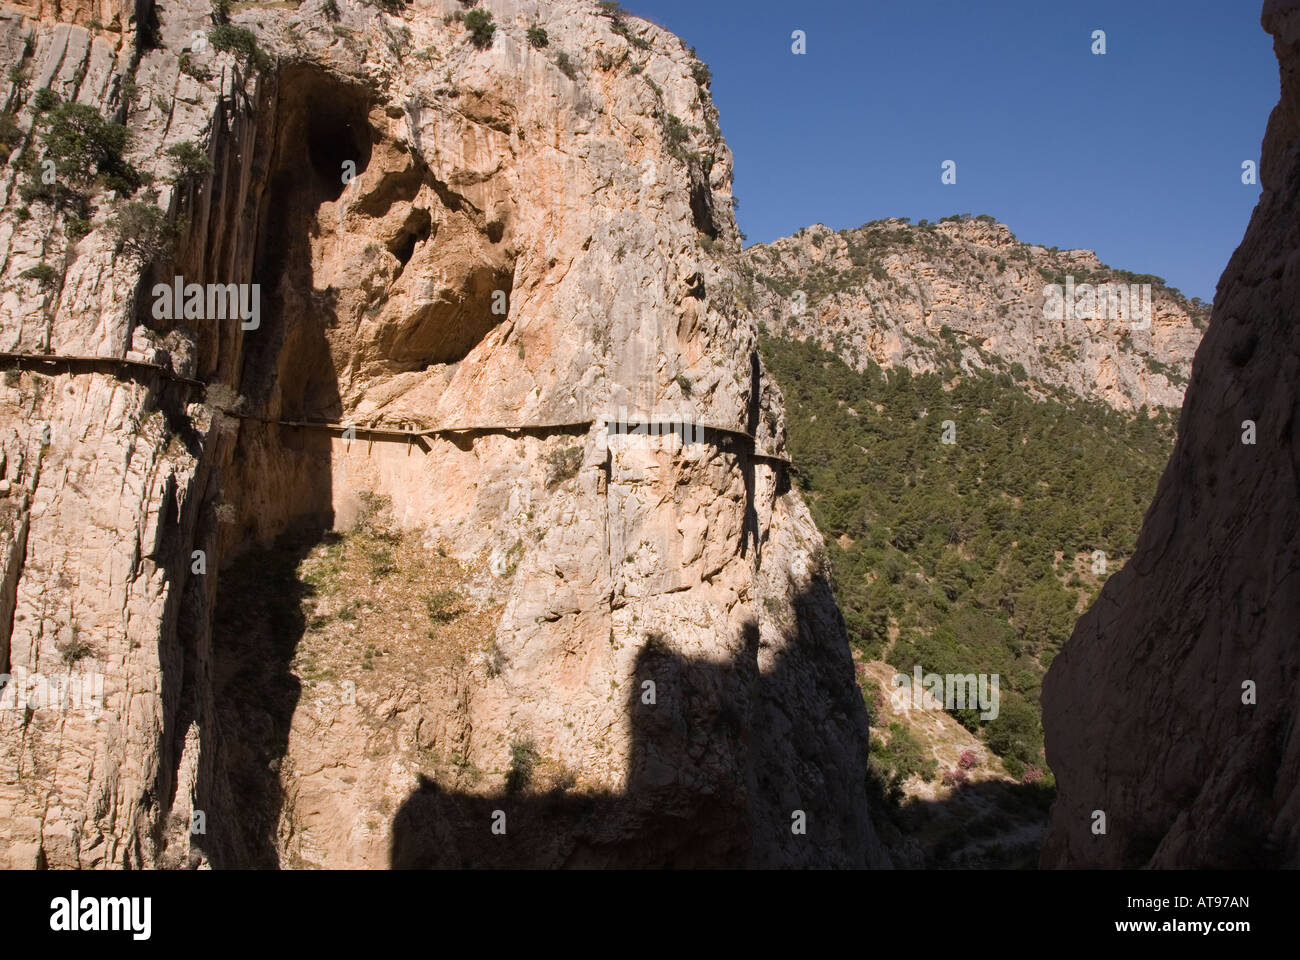 El camino del rey walkway through El Chorro gorge, Malaga, Spain Stock Photo